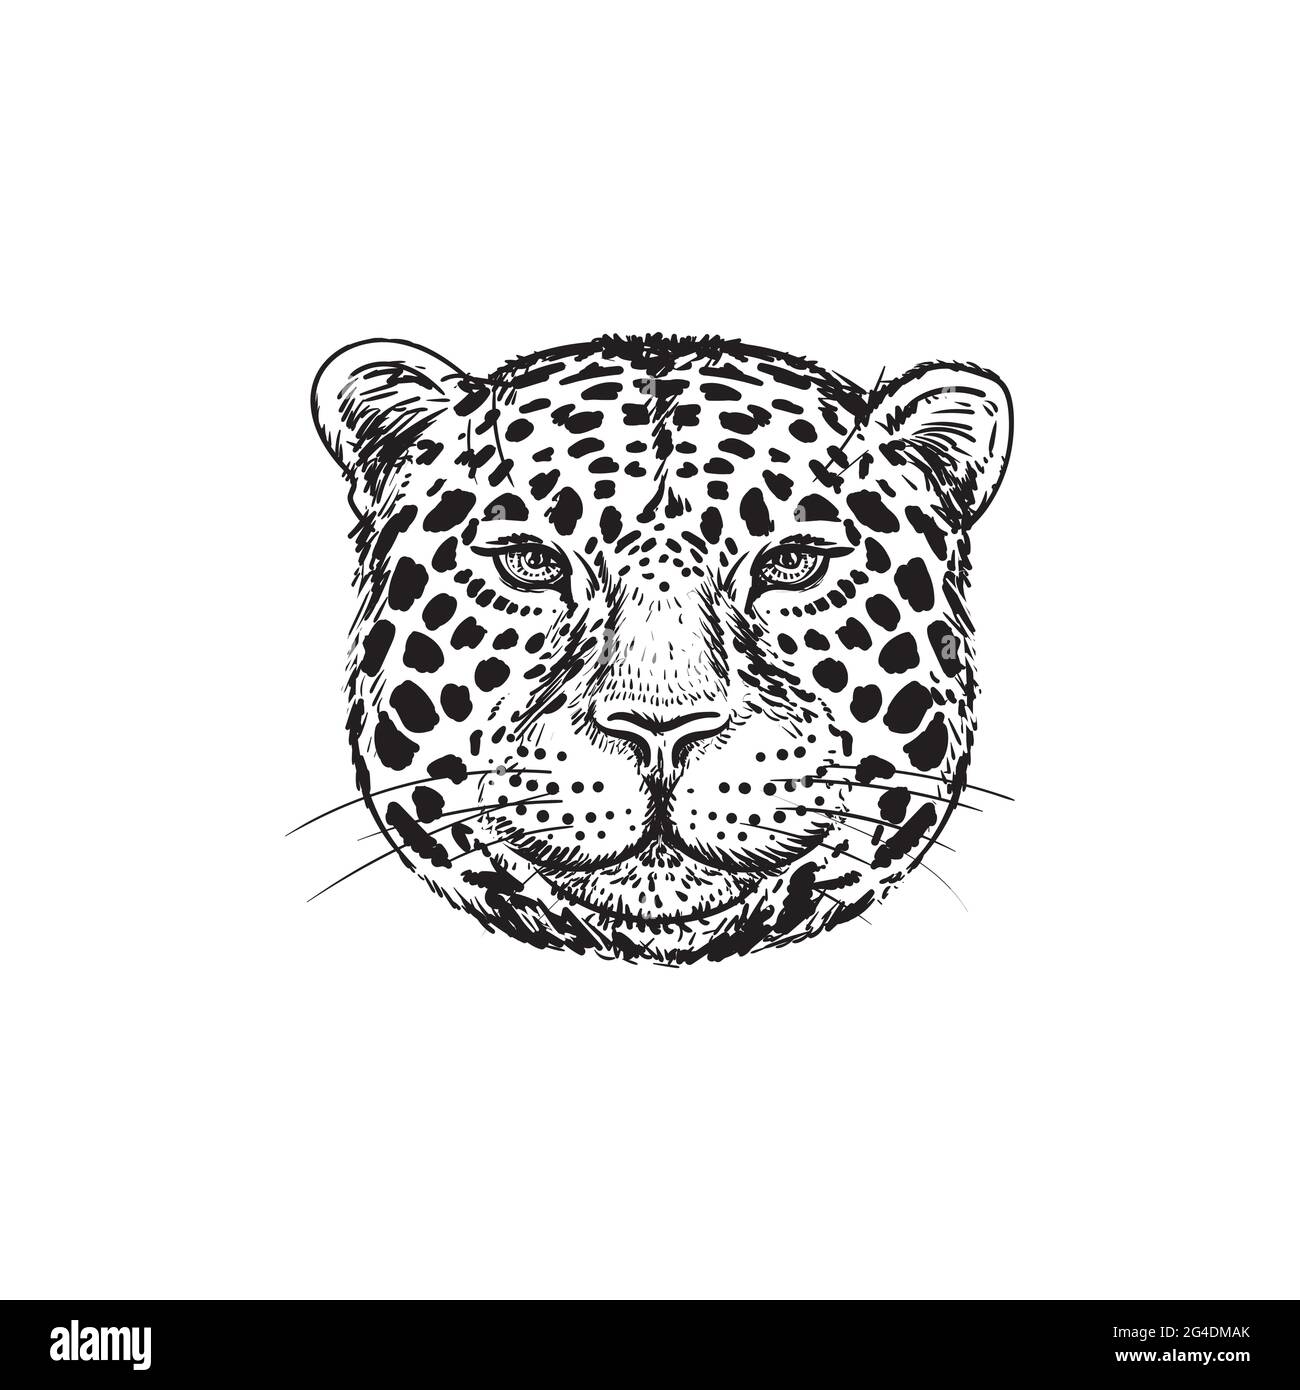 Dessin à la main Leopard face isolée illustration sur fond blanc. Portrait de Jaguar. Joli visage duveteux de Big Cat.Beast logo.Predator tête esquisse. Illustration de Vecteur